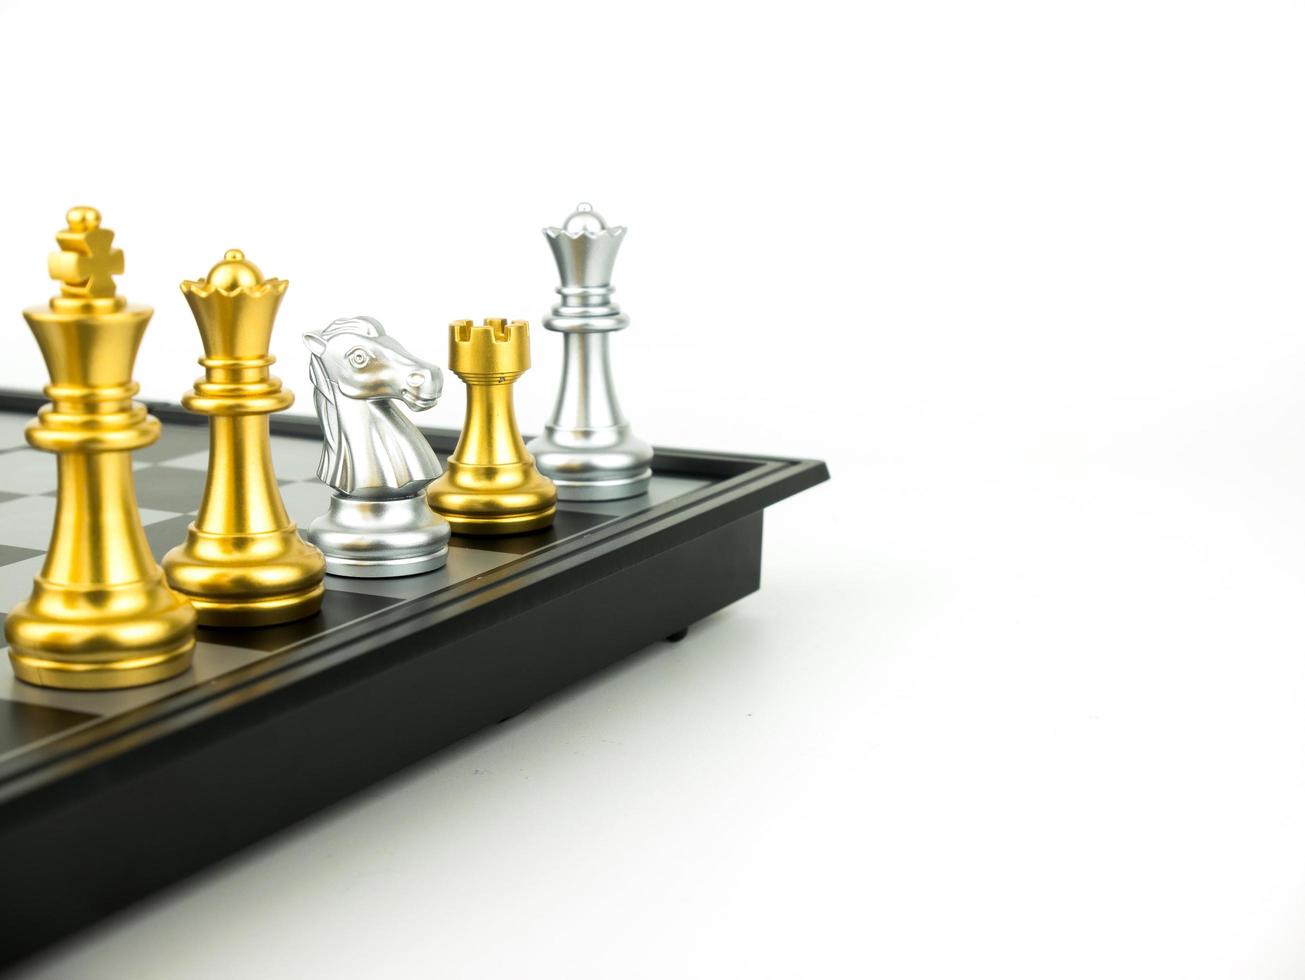 Gold und Silber König und Ritter der Schachfigur Setup auf weißem Hintergrund. Führungs- und Teamwork-Konzept für den Erfolg foto